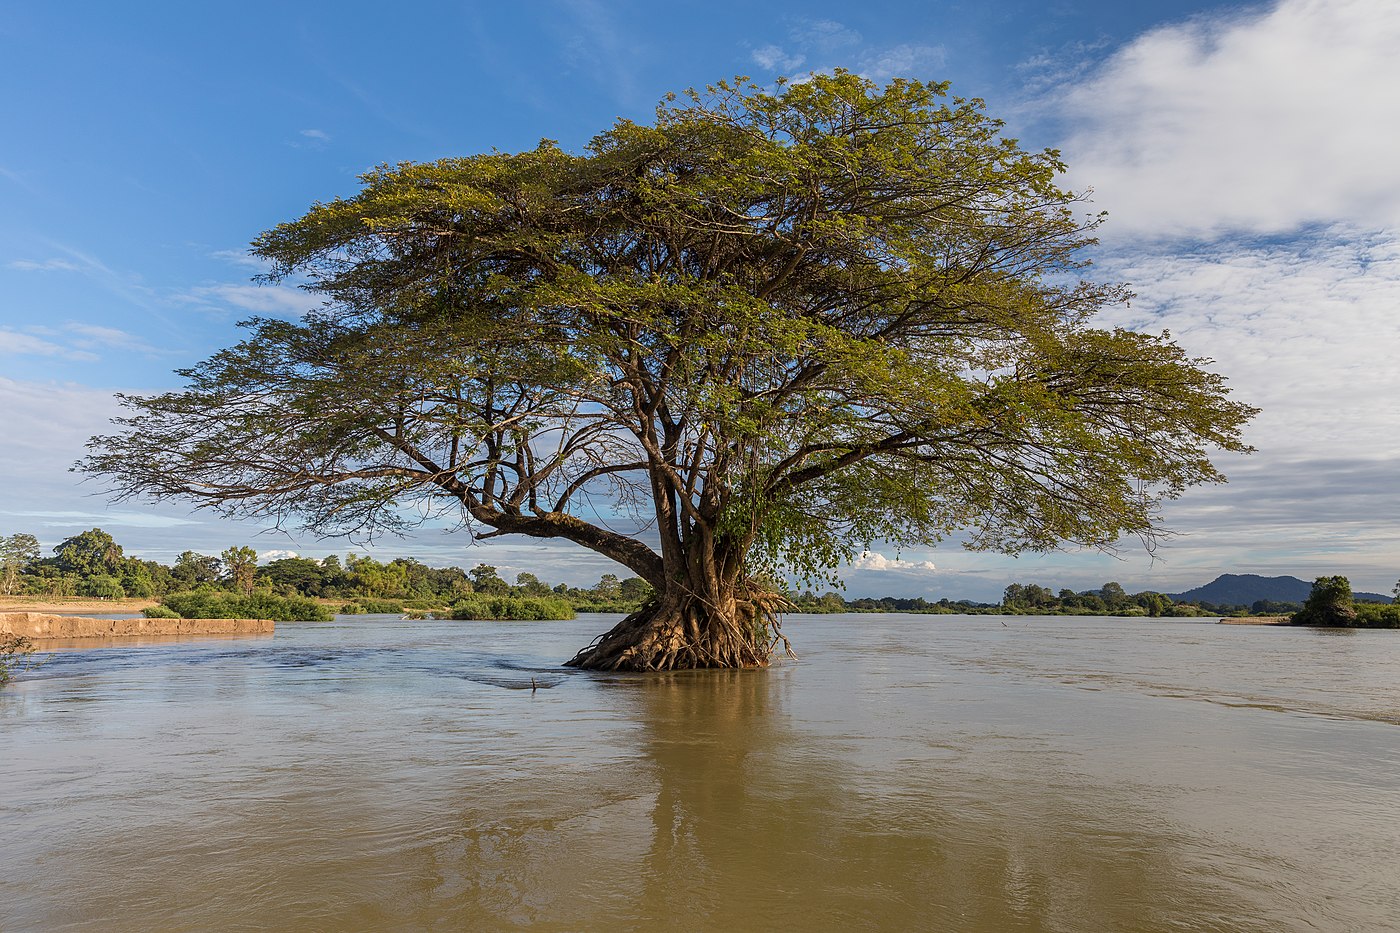 Submerged Samanea saman (Albizia saman or rain tree) in the Mekong